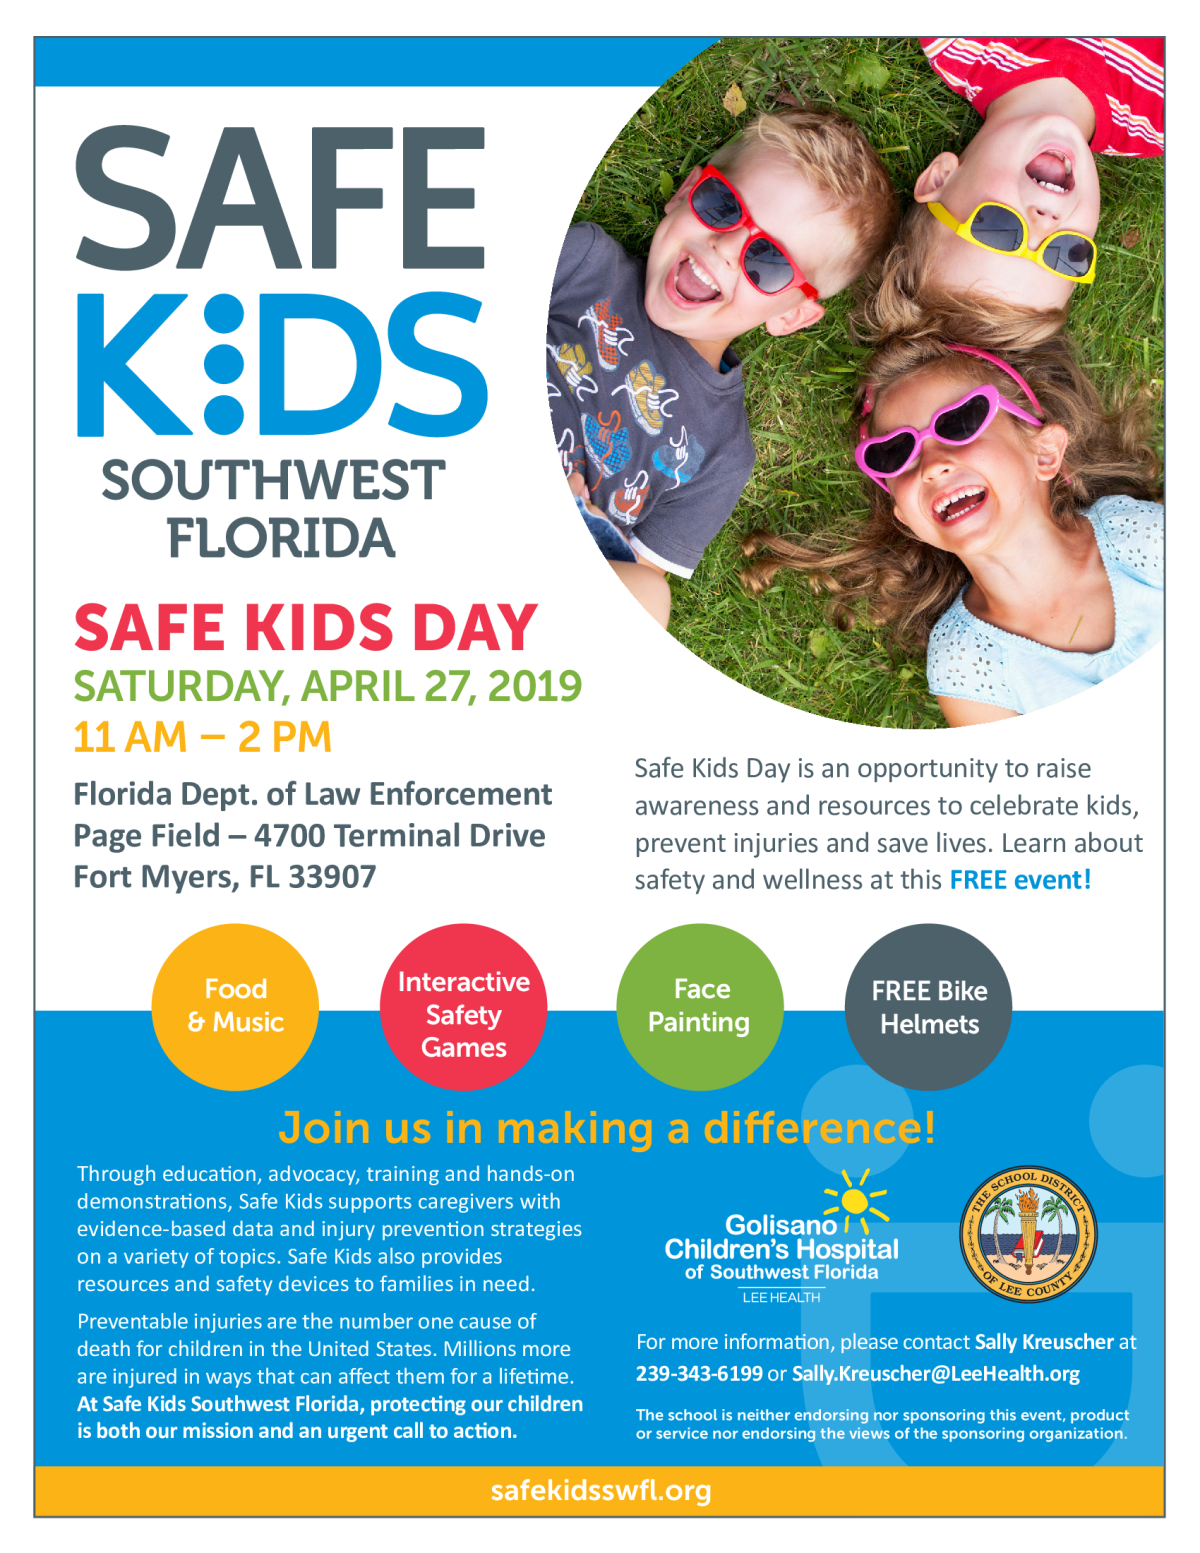 Image of a flyer titled Safe Kids Day